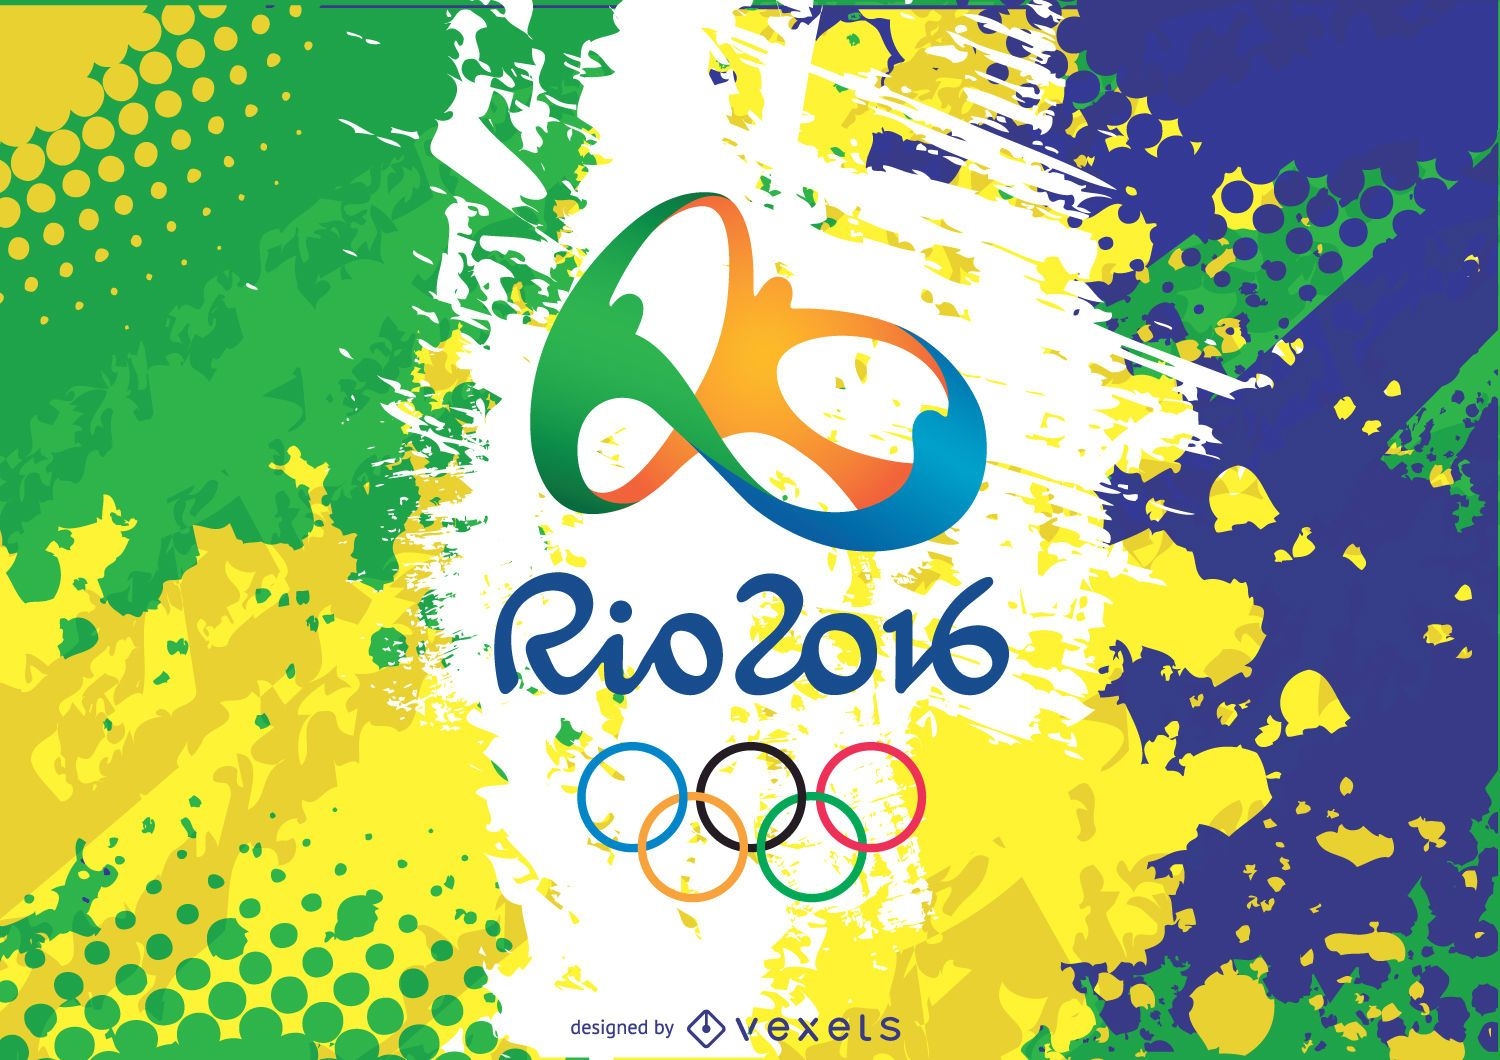 Logotipo y fondo de Rio 2016